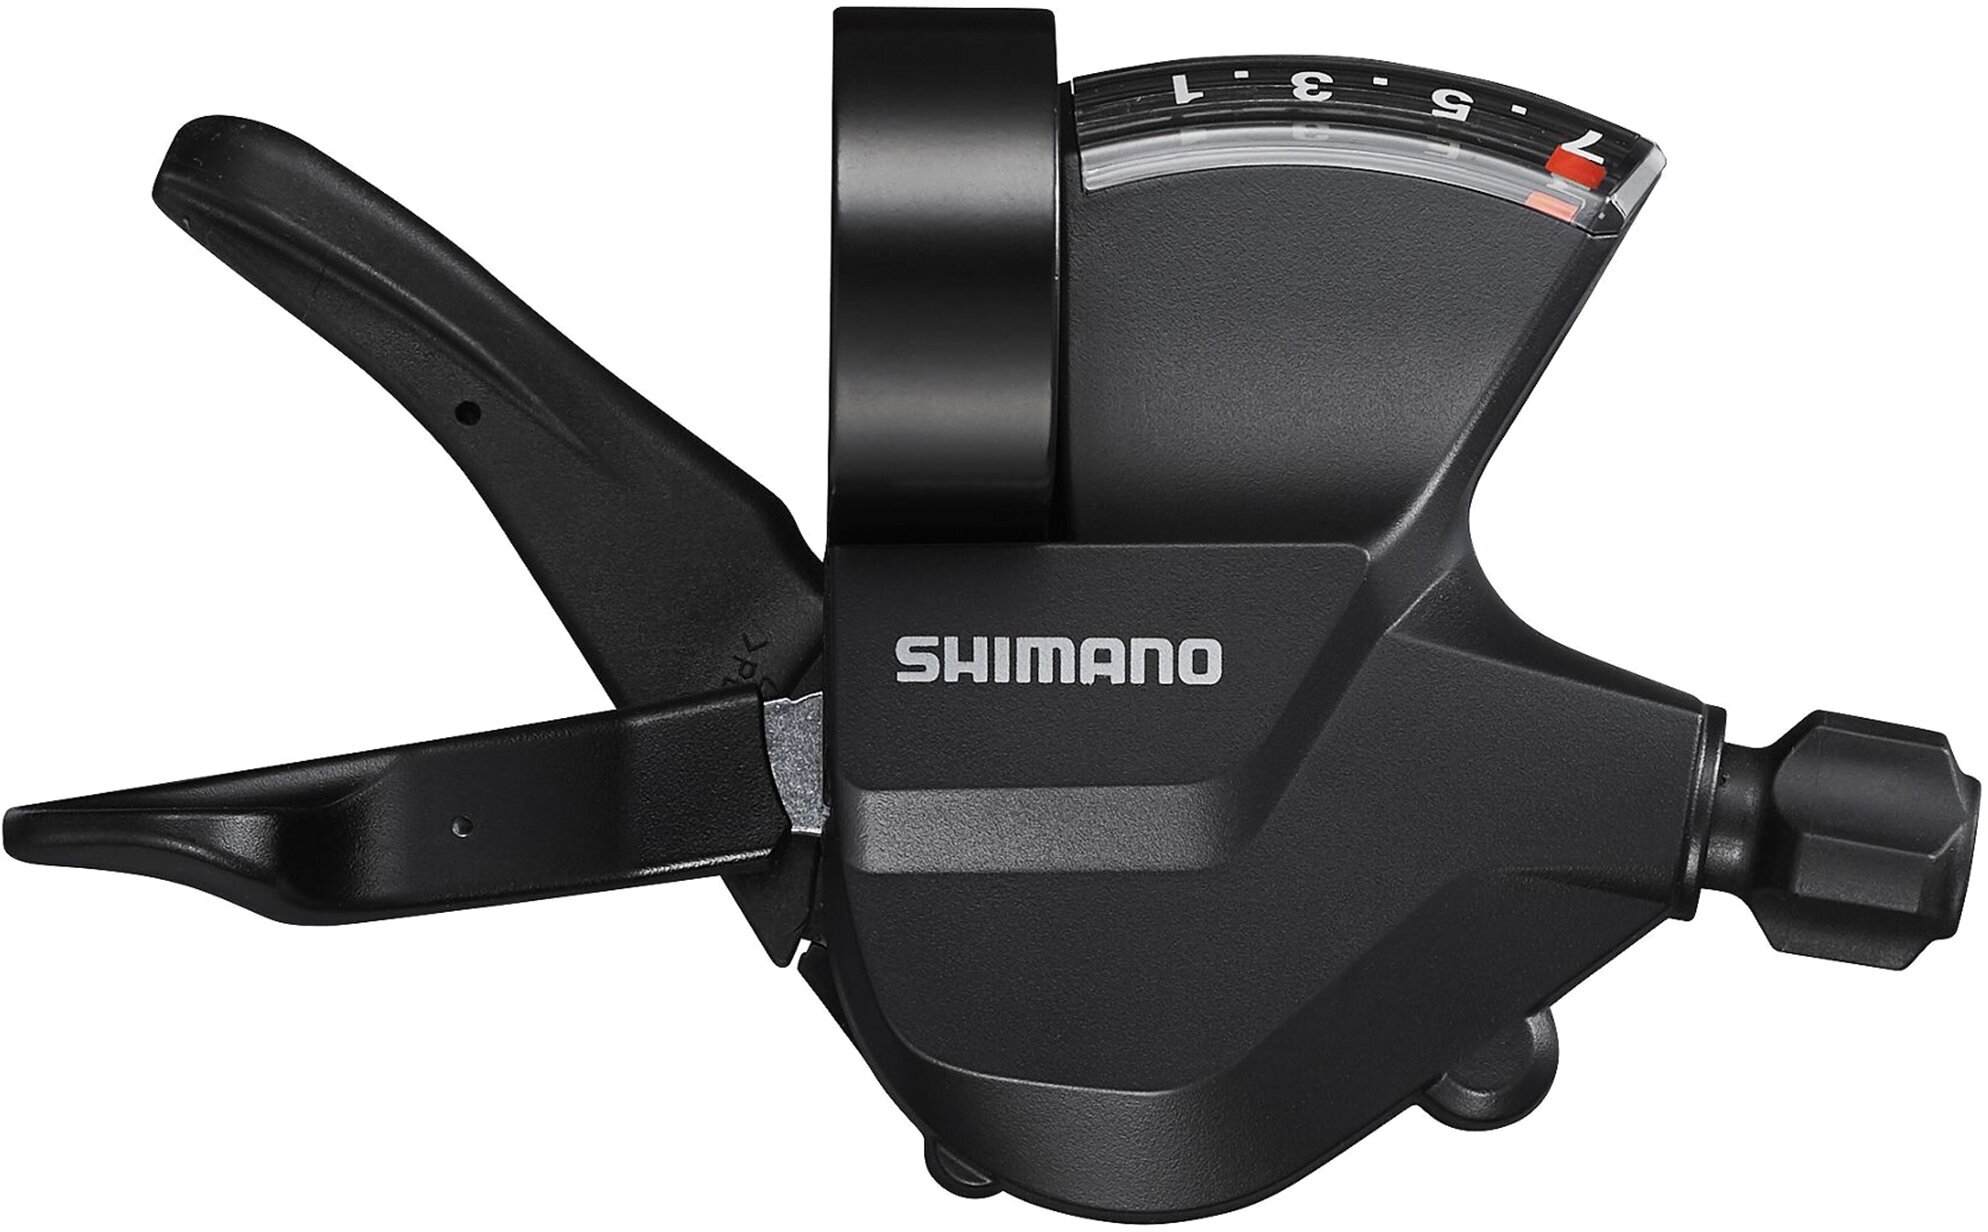 Шифтер (манетка) Shimano SL-M315, серия Altus, 7 скоростей, под правую руку, трос 205 см, черный